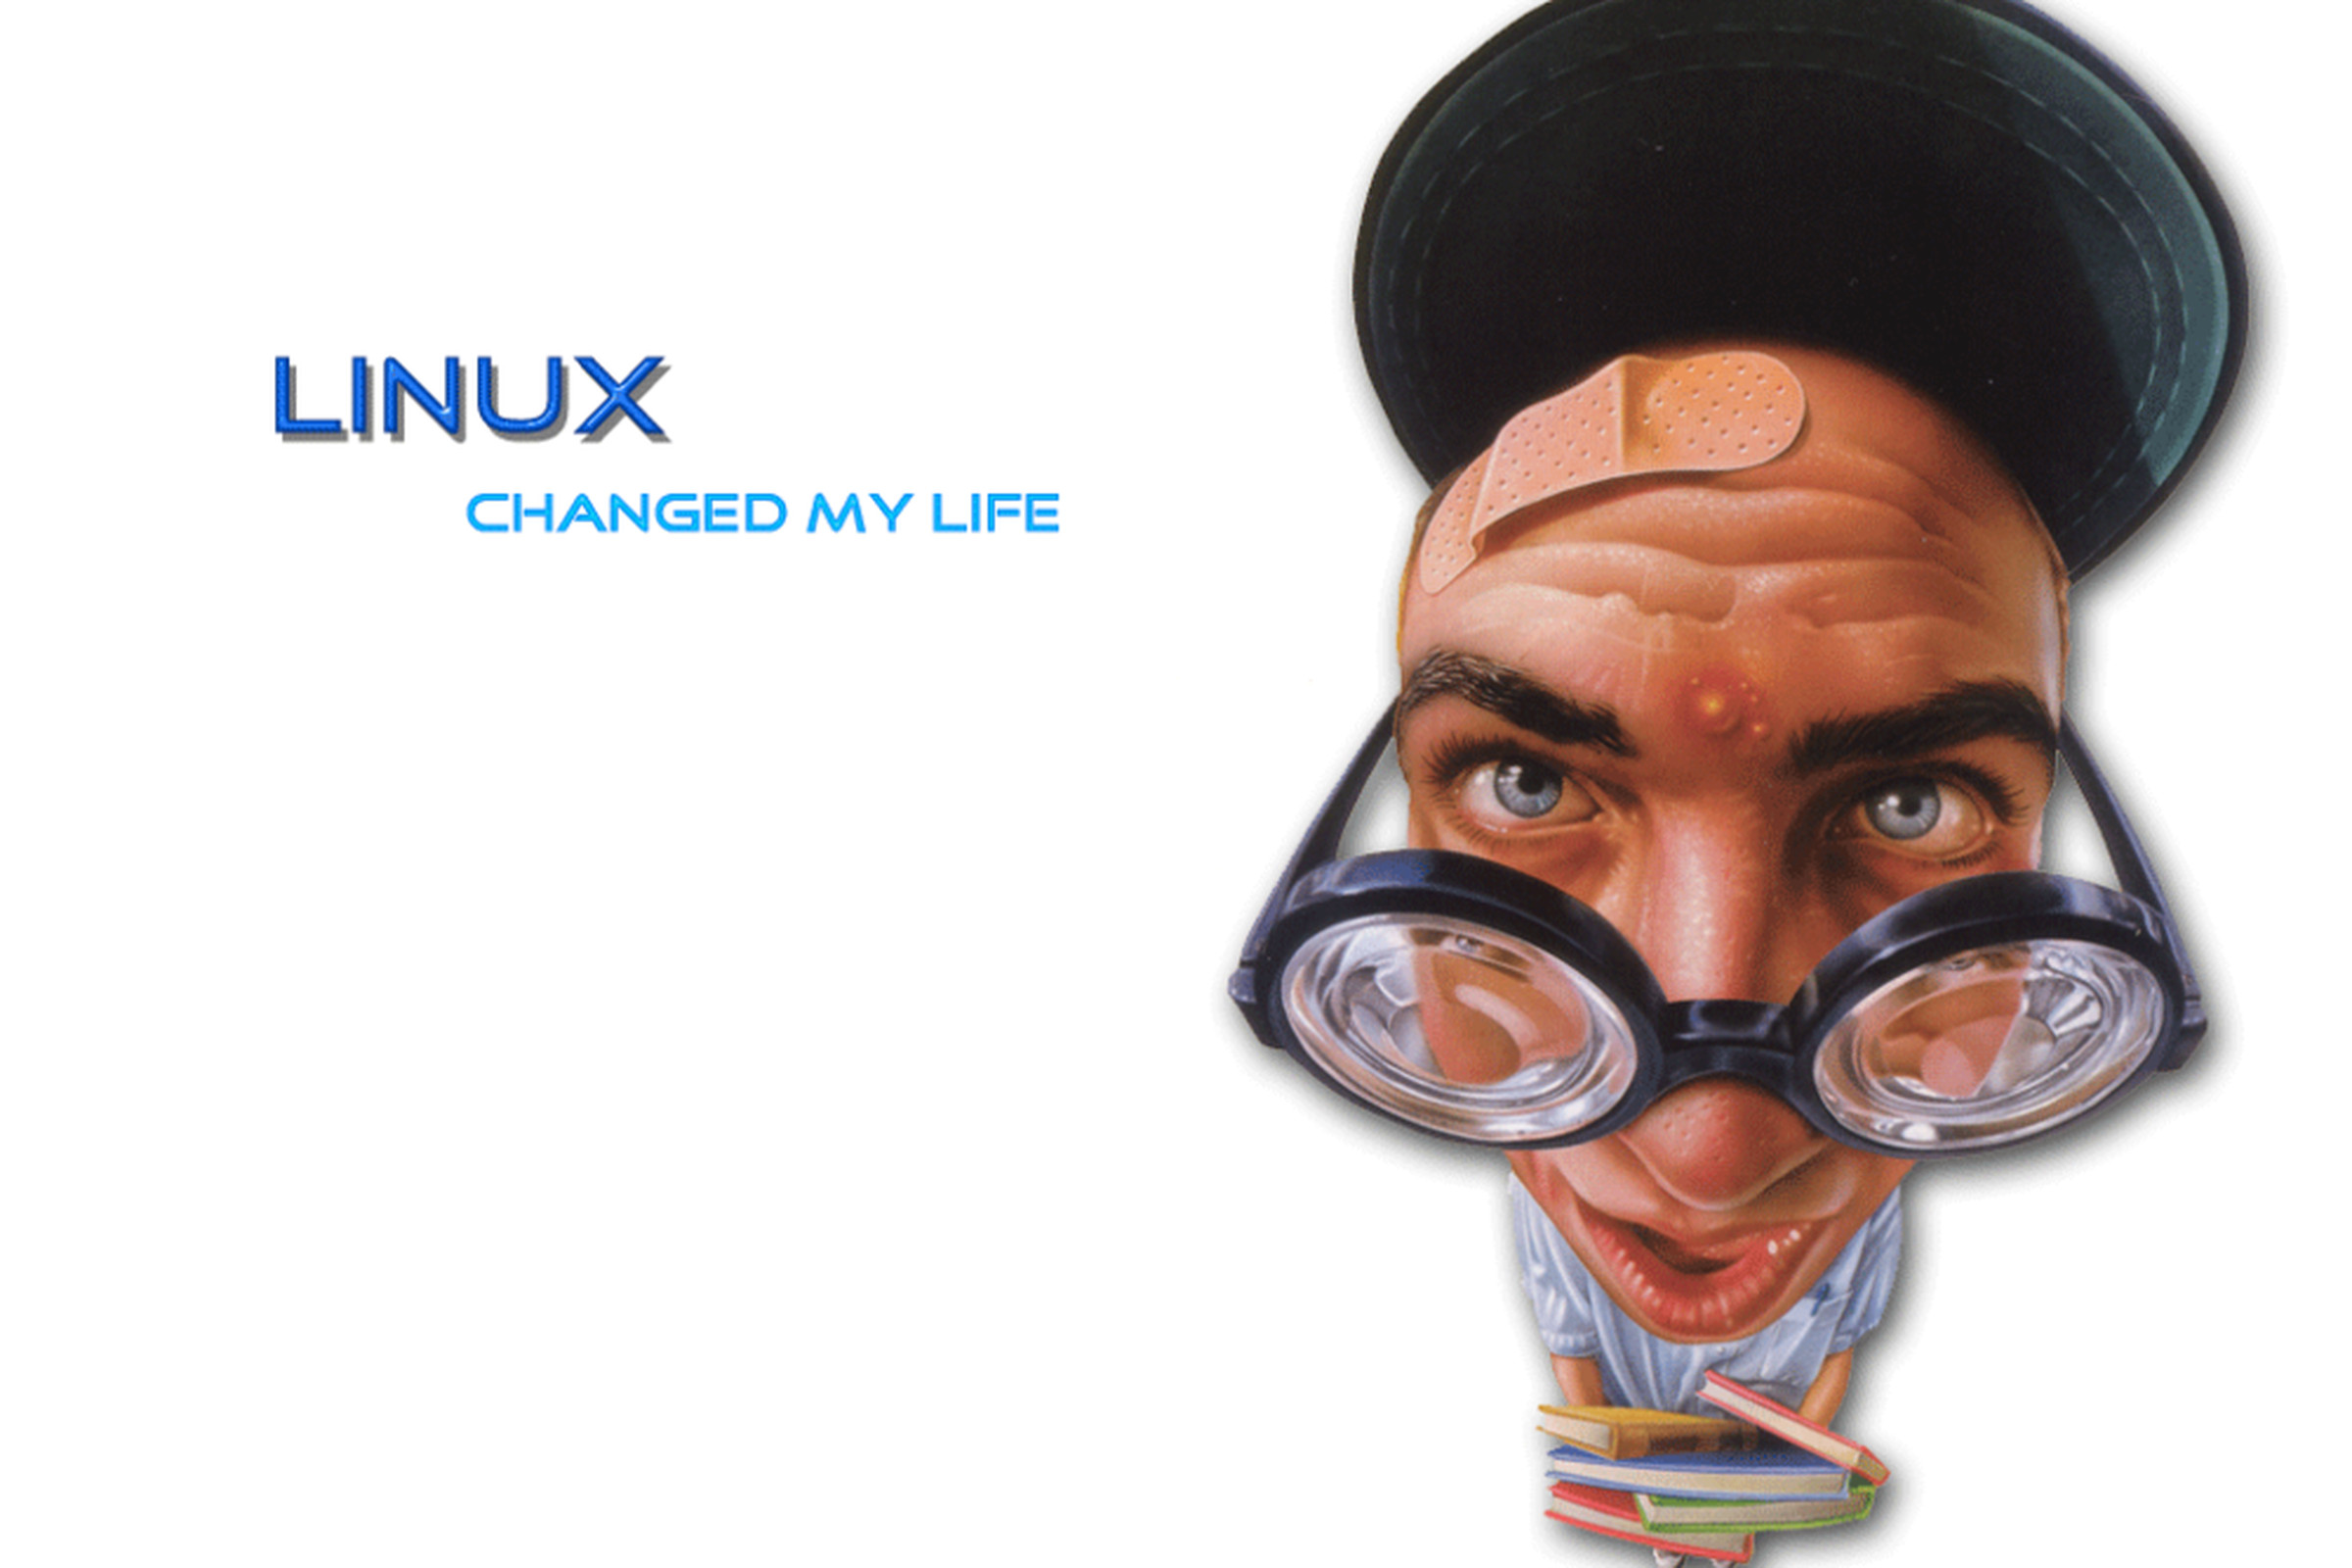 Linux nerd